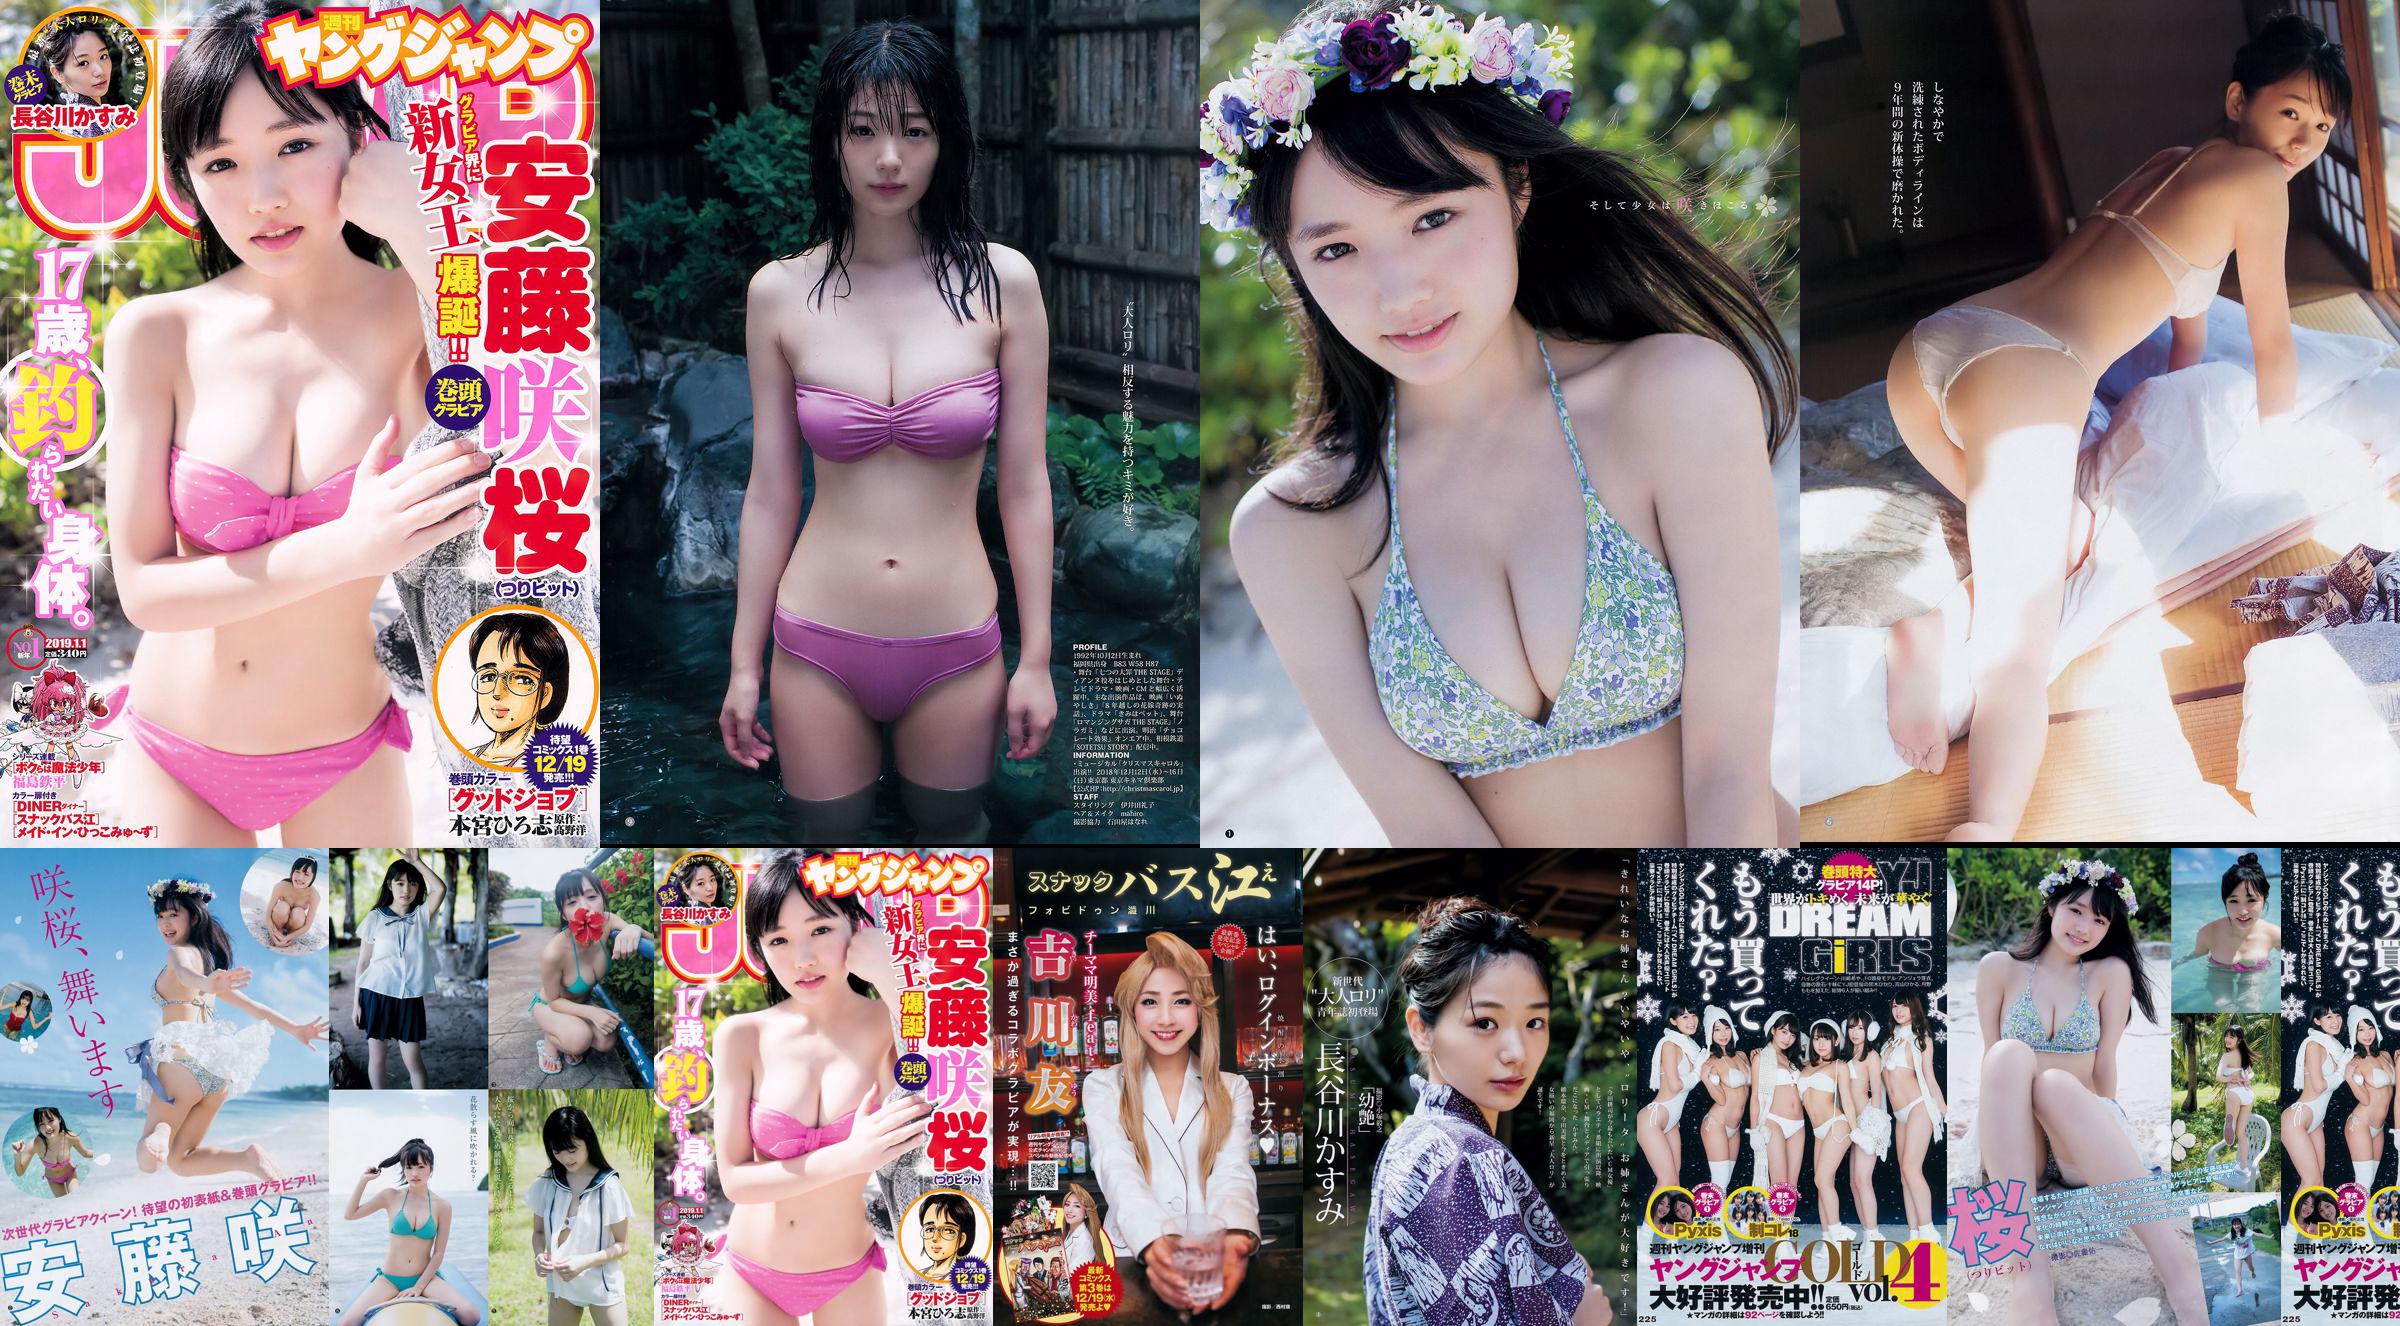 Sakura Ando Kasumi Hasegawa [Weekly Young Jump] Magazine photo n ° 01 2019 No.4c5a6d Page 1